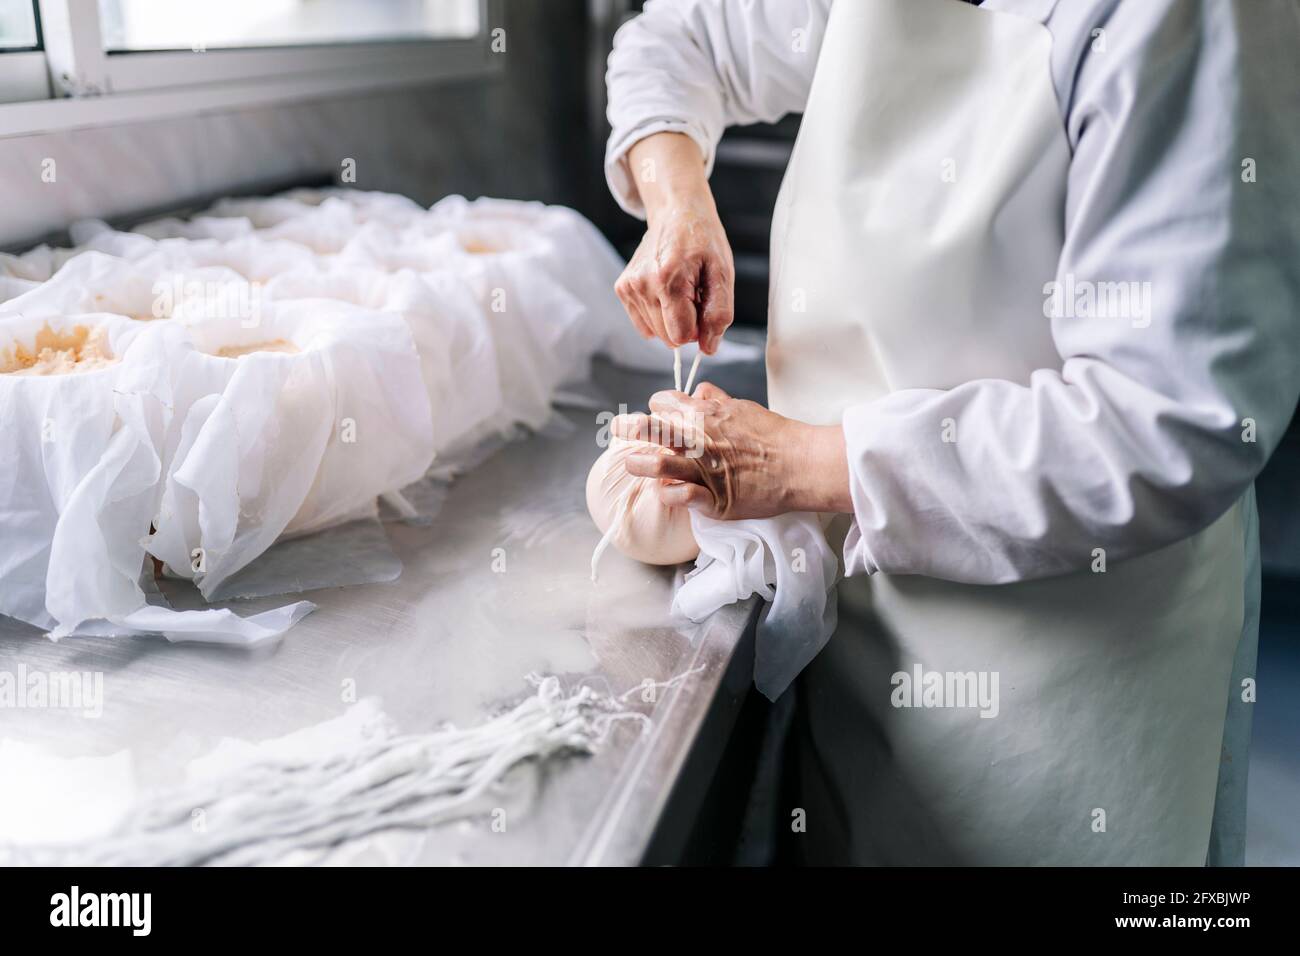 Un chef expérimenté emballant du fromage en tissu à l'usine Banque D'Images